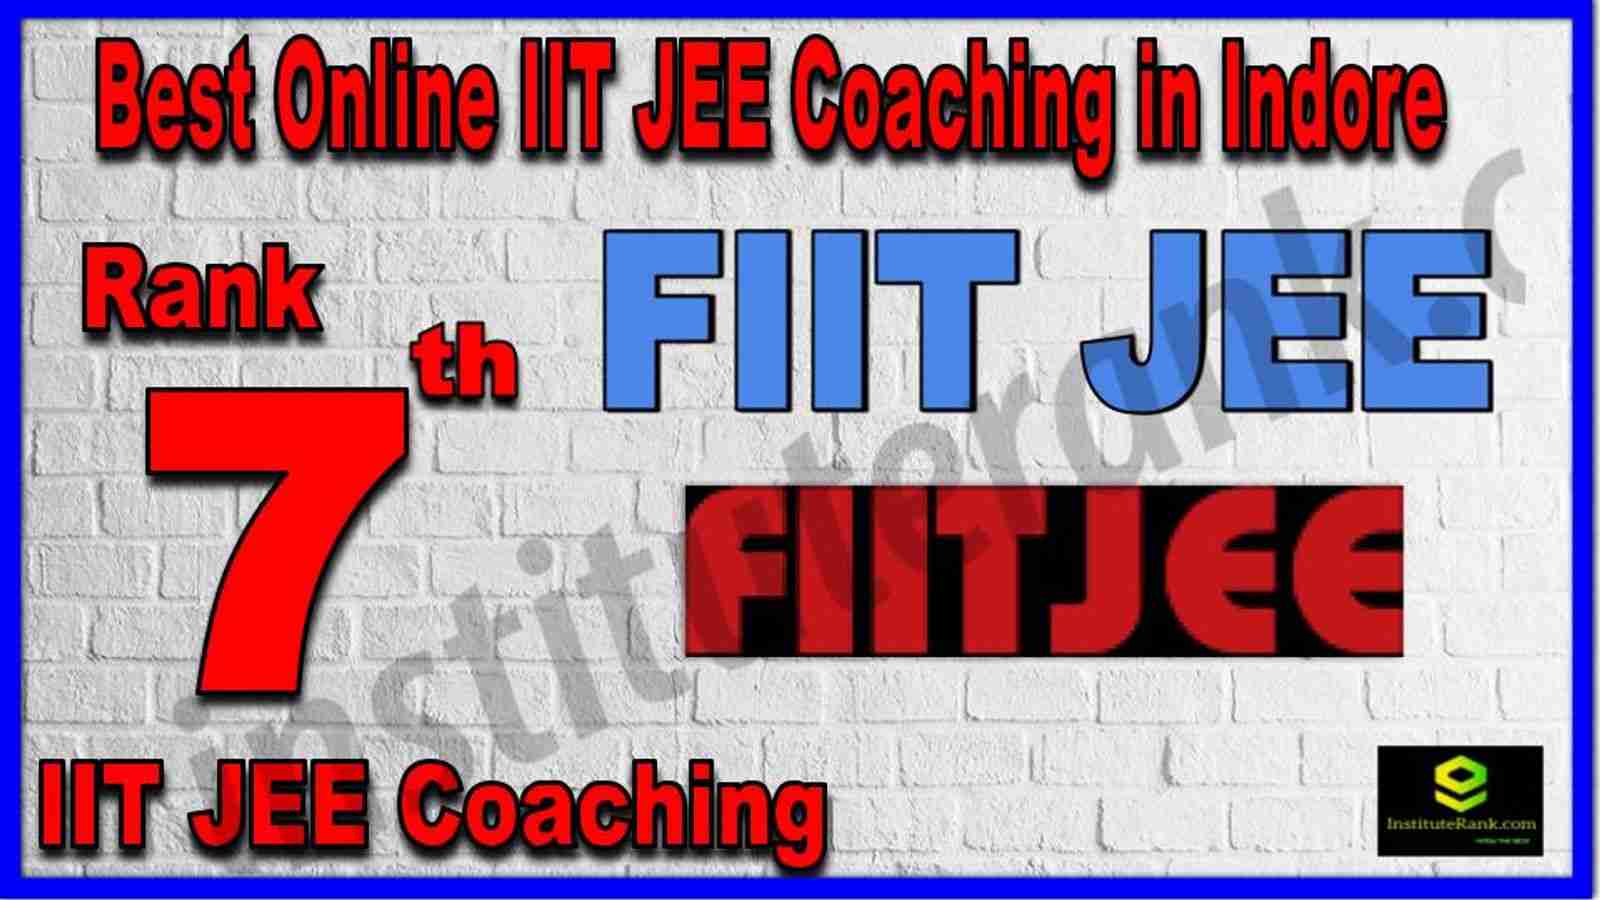 Rank 7th Best Online IIT JEE Coaching in Indore